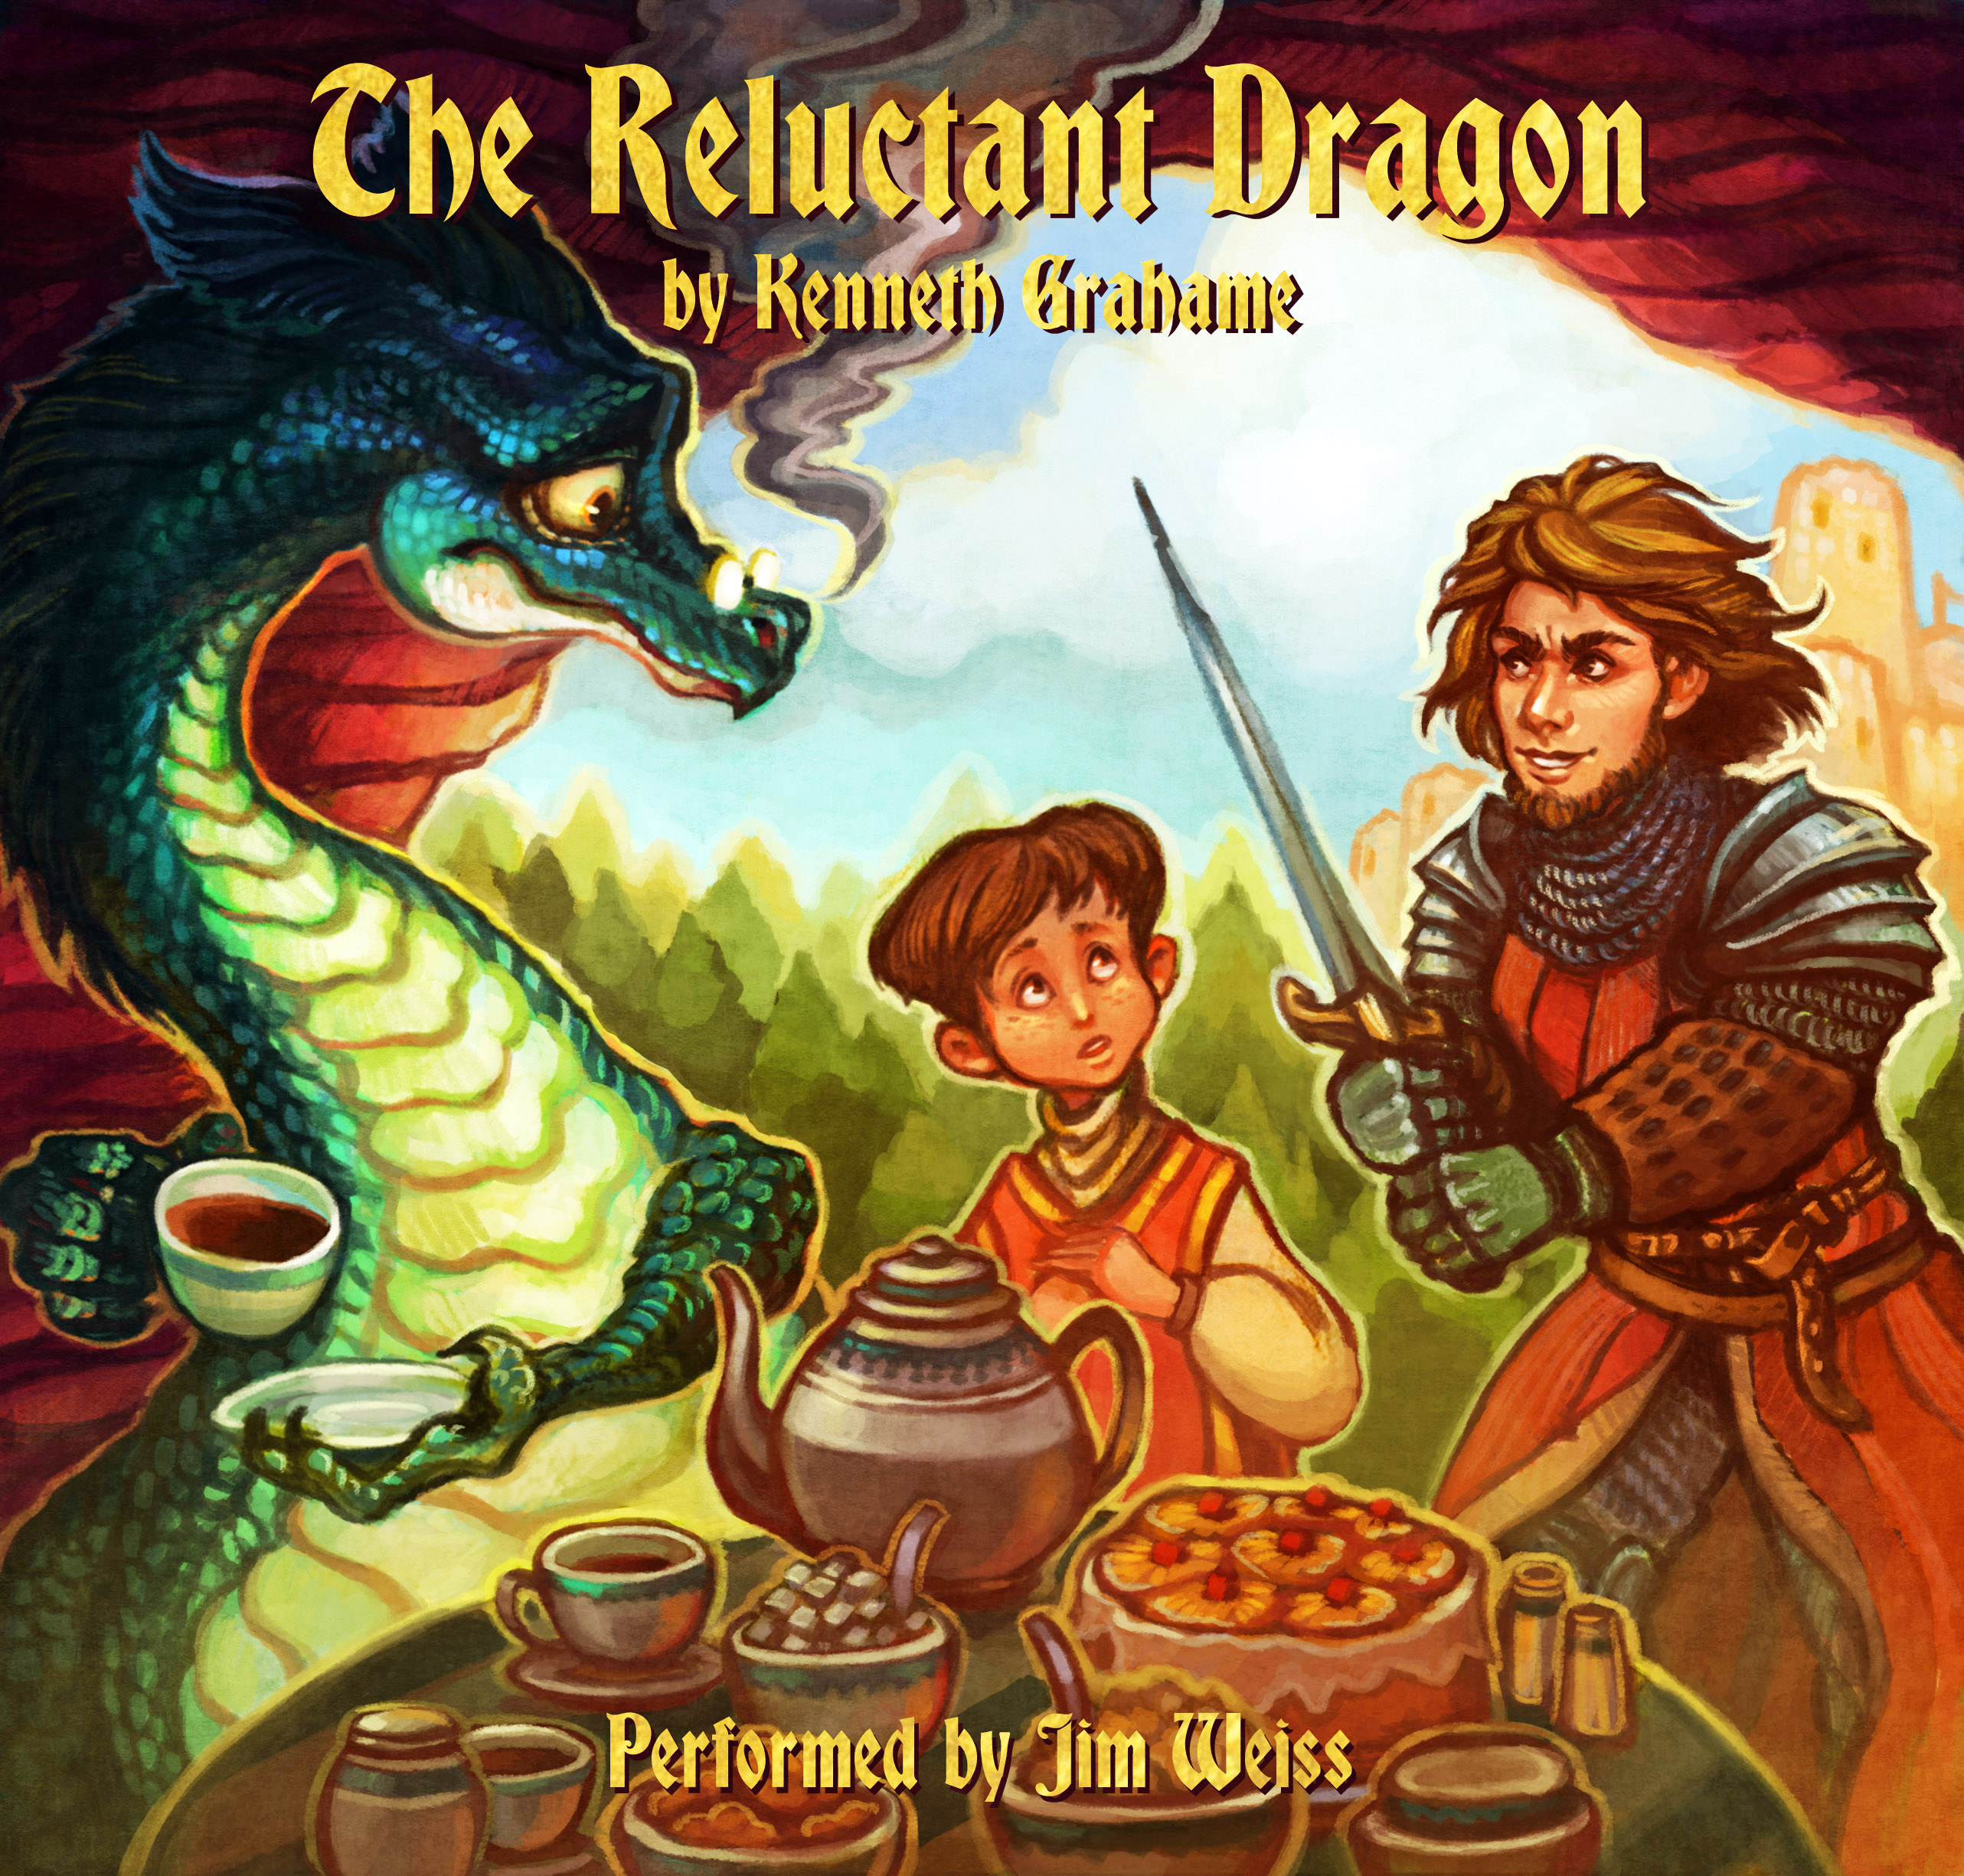 Игра дракона аудиокнига. The reluctant Dragon. The reluctant Dragon by Kenneth Grahame. Аудиокнига дракон в руке. Хрустальный дракон аудиокнига.